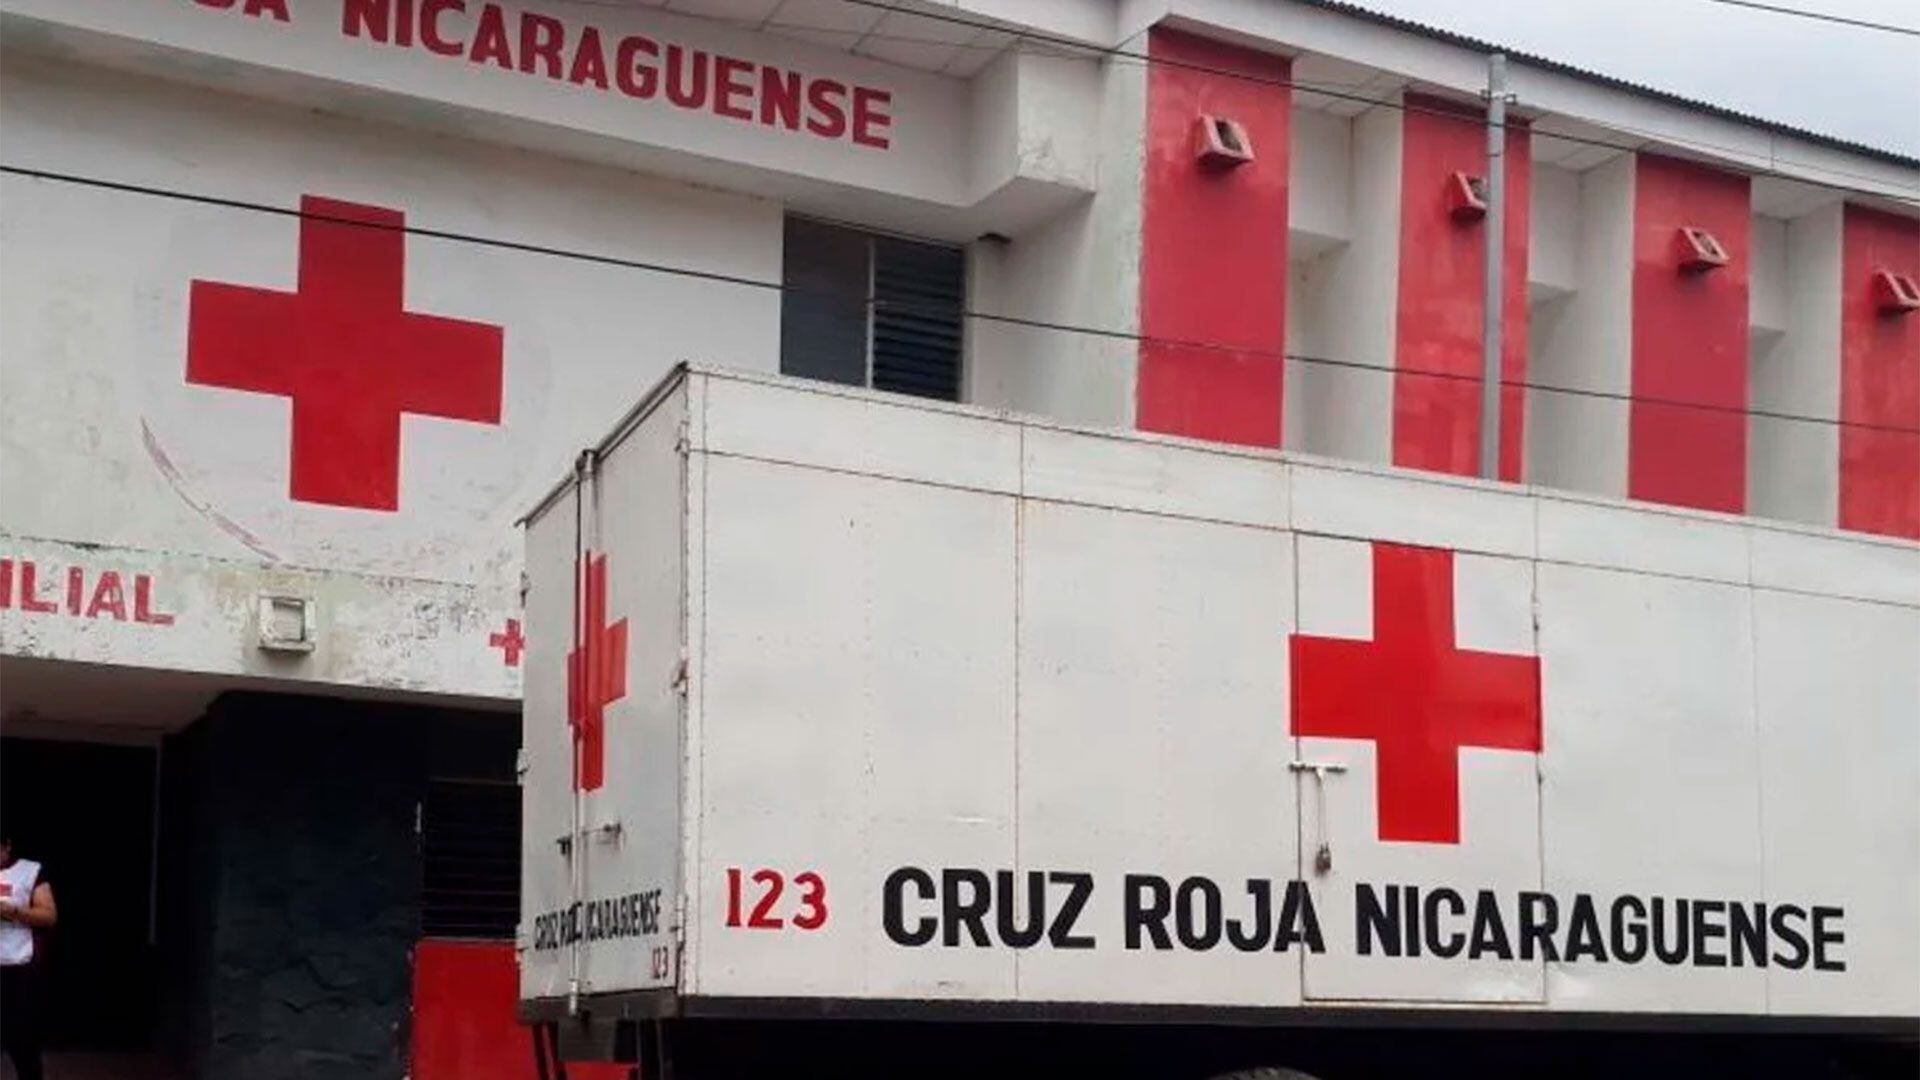 Ortega también ordenó la creación de una nueva “Cruz Roja Nicaragüense”, adscrita al Ministerio de Salud, y que todo el patrimonio, bienes y acciones que a la fecha pertenezcan a la Cruz Roja Nicaragüense pasen a ser propiedad del Estado y administrados por la nueva organización humanitaria estatal.